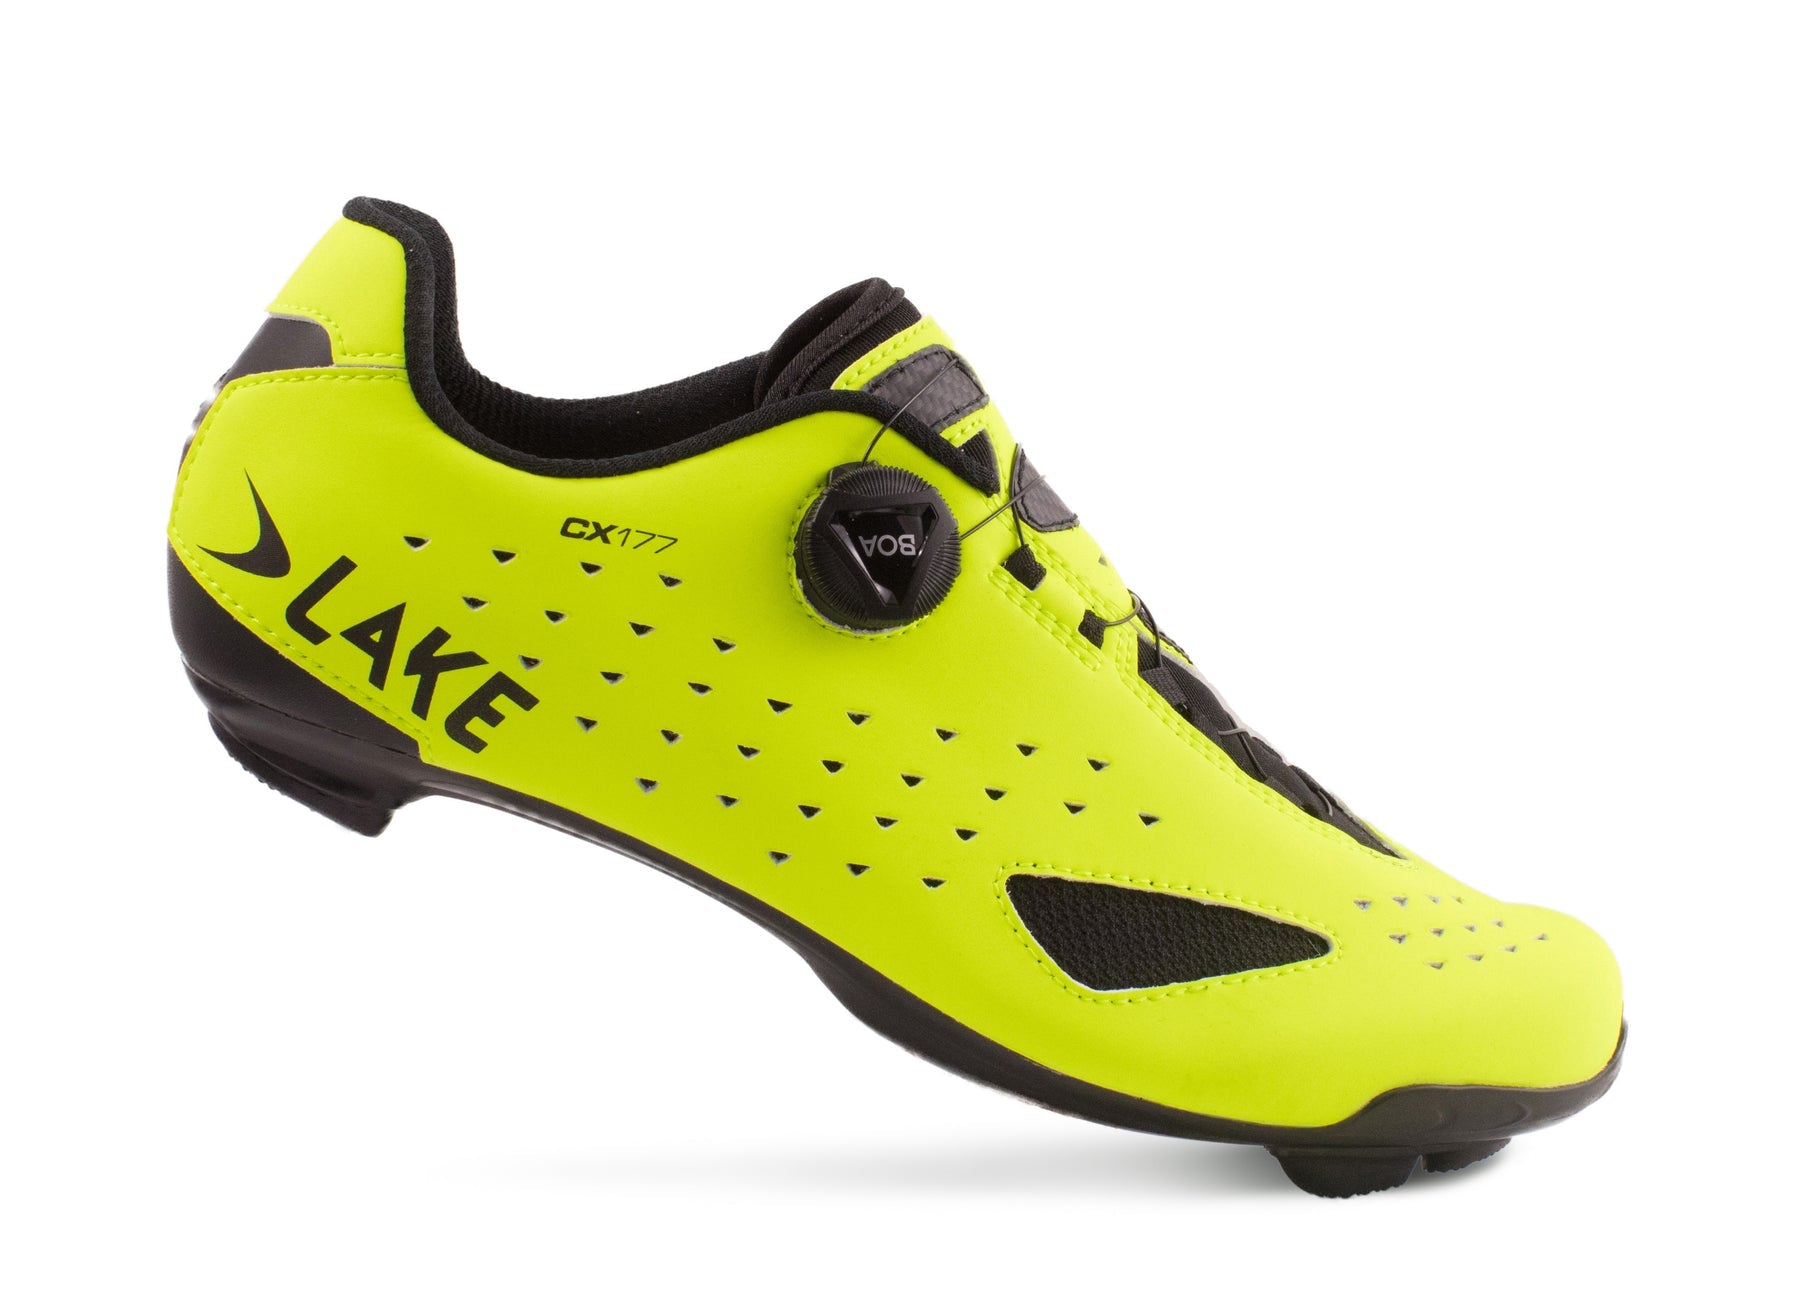 lake shoes CX177-X wide hiviz yellow/black